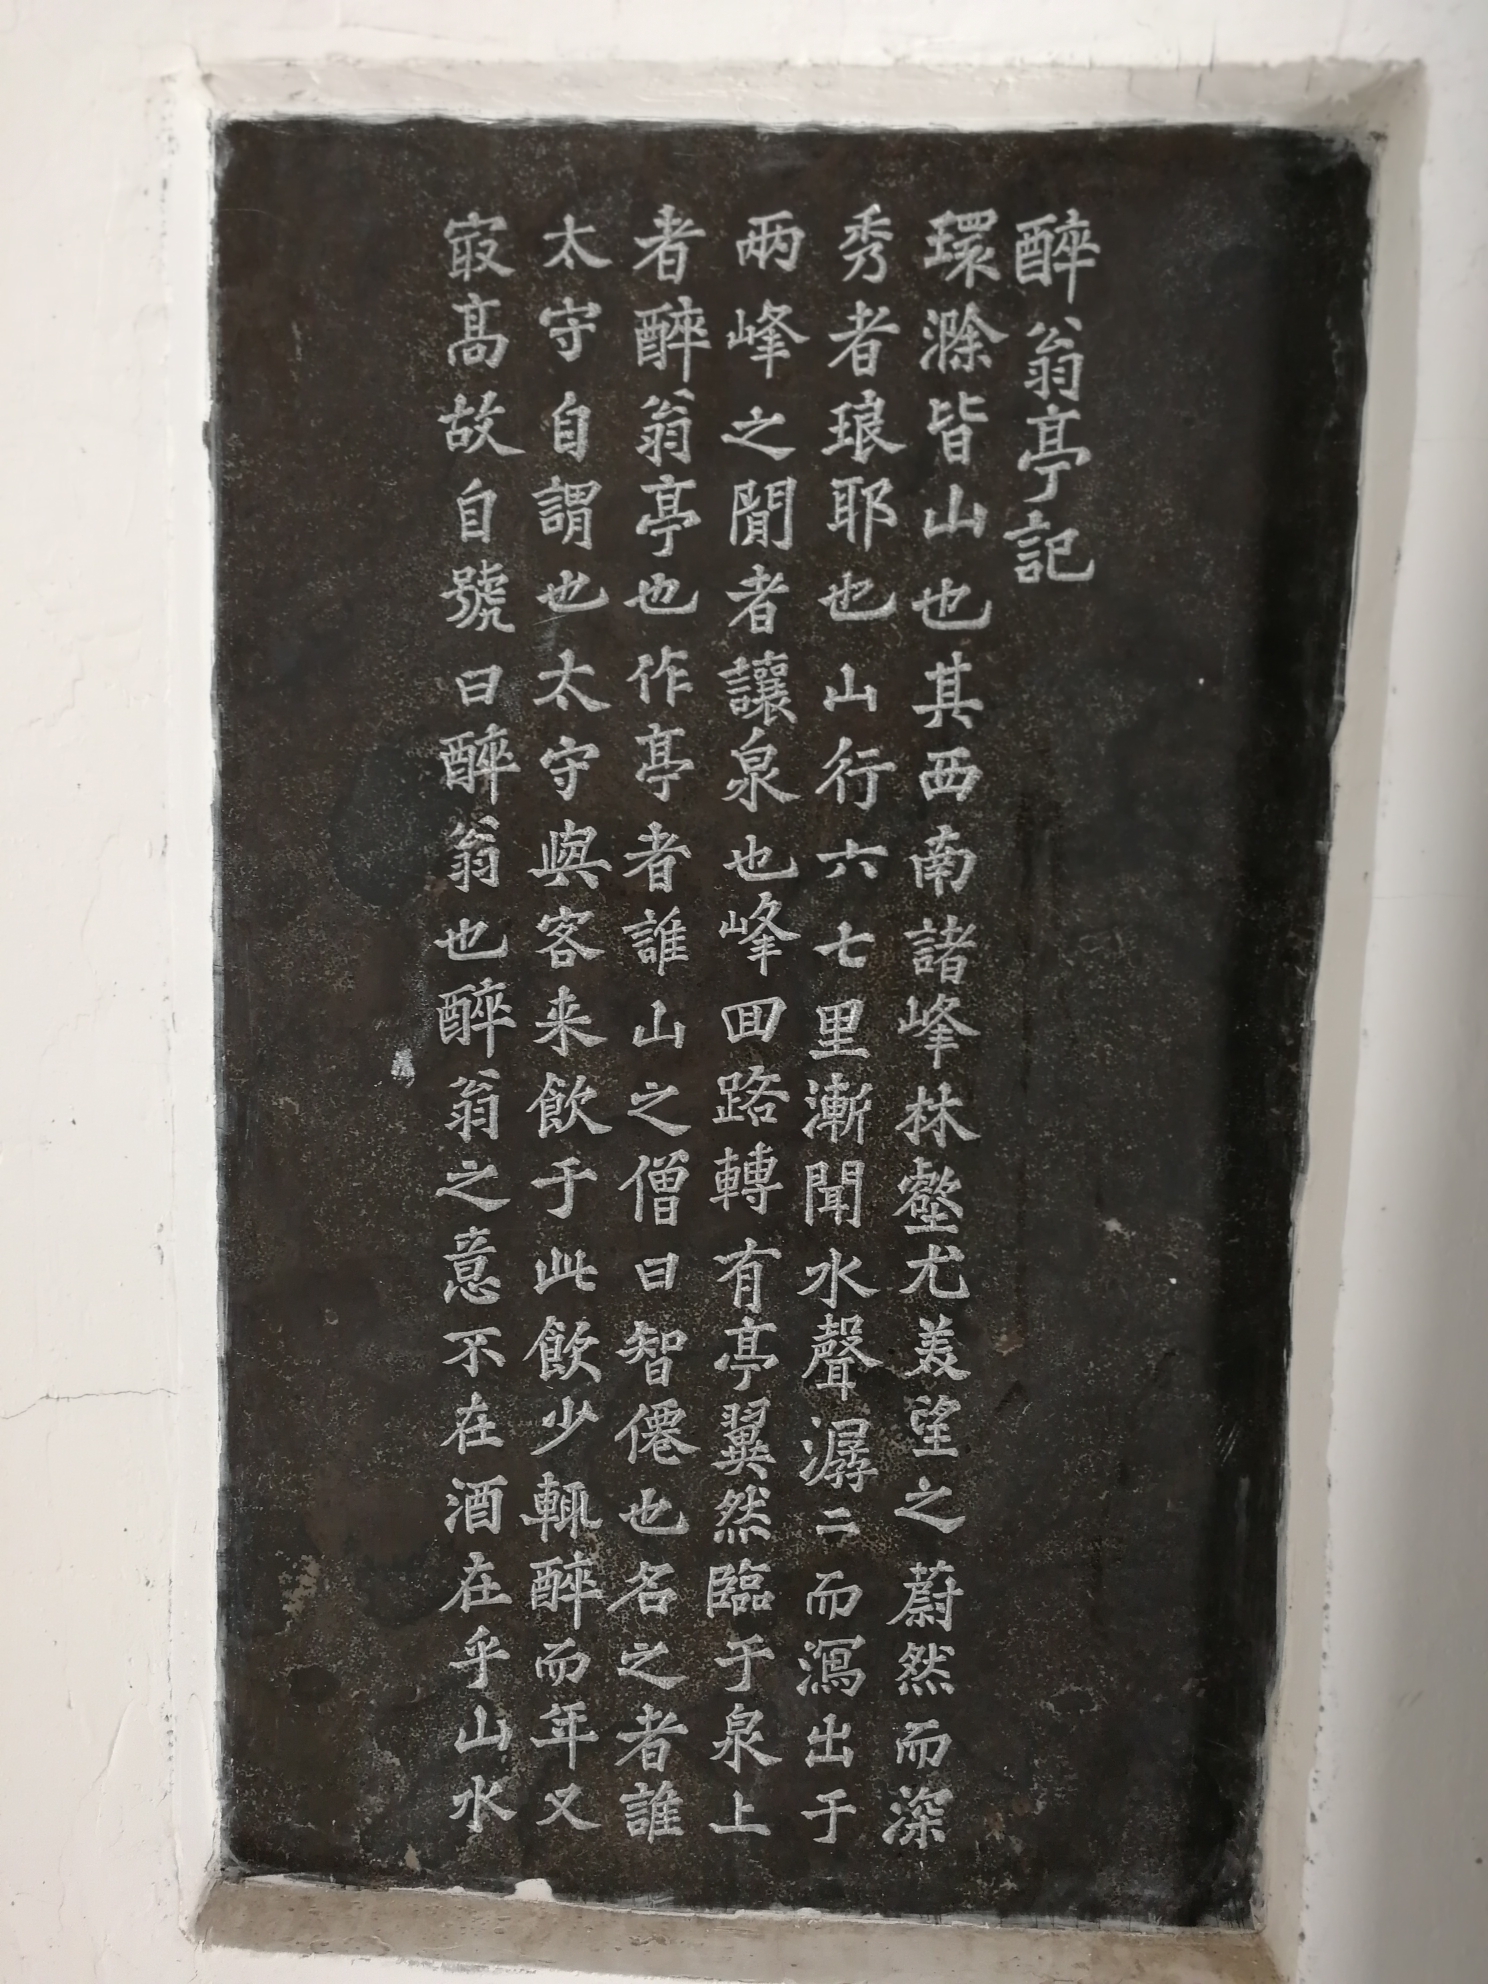 琅琊山醉翁亭有欧文苏字的石碑，虽然字迹早已模糊，被破坏殆尽，但还是能够品出历史记忆